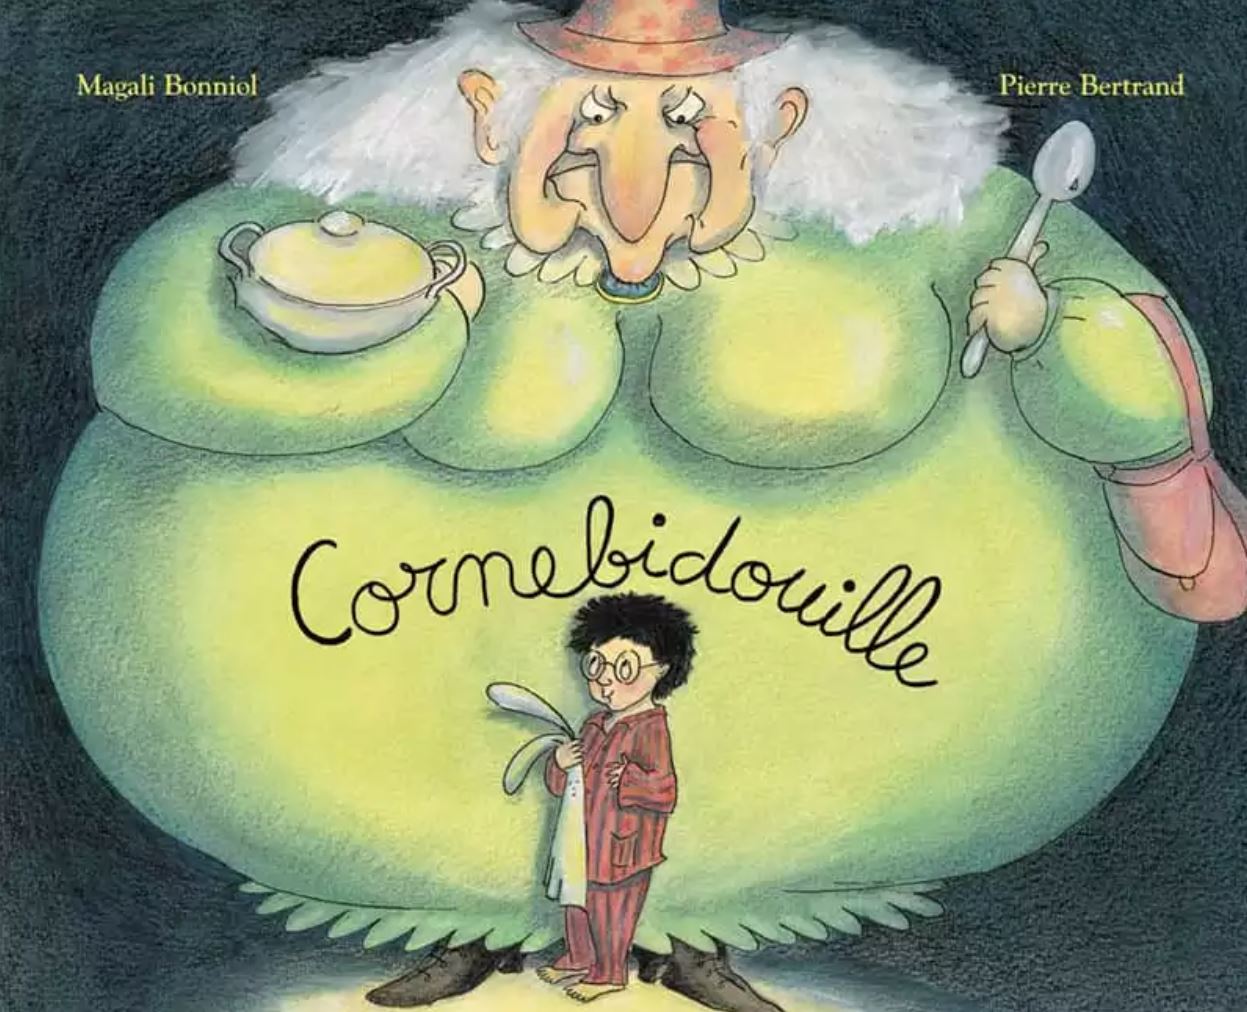 Livre Cornebidouille de Bertrand-Bonniol- Moulin Roty 894081 9782211073271